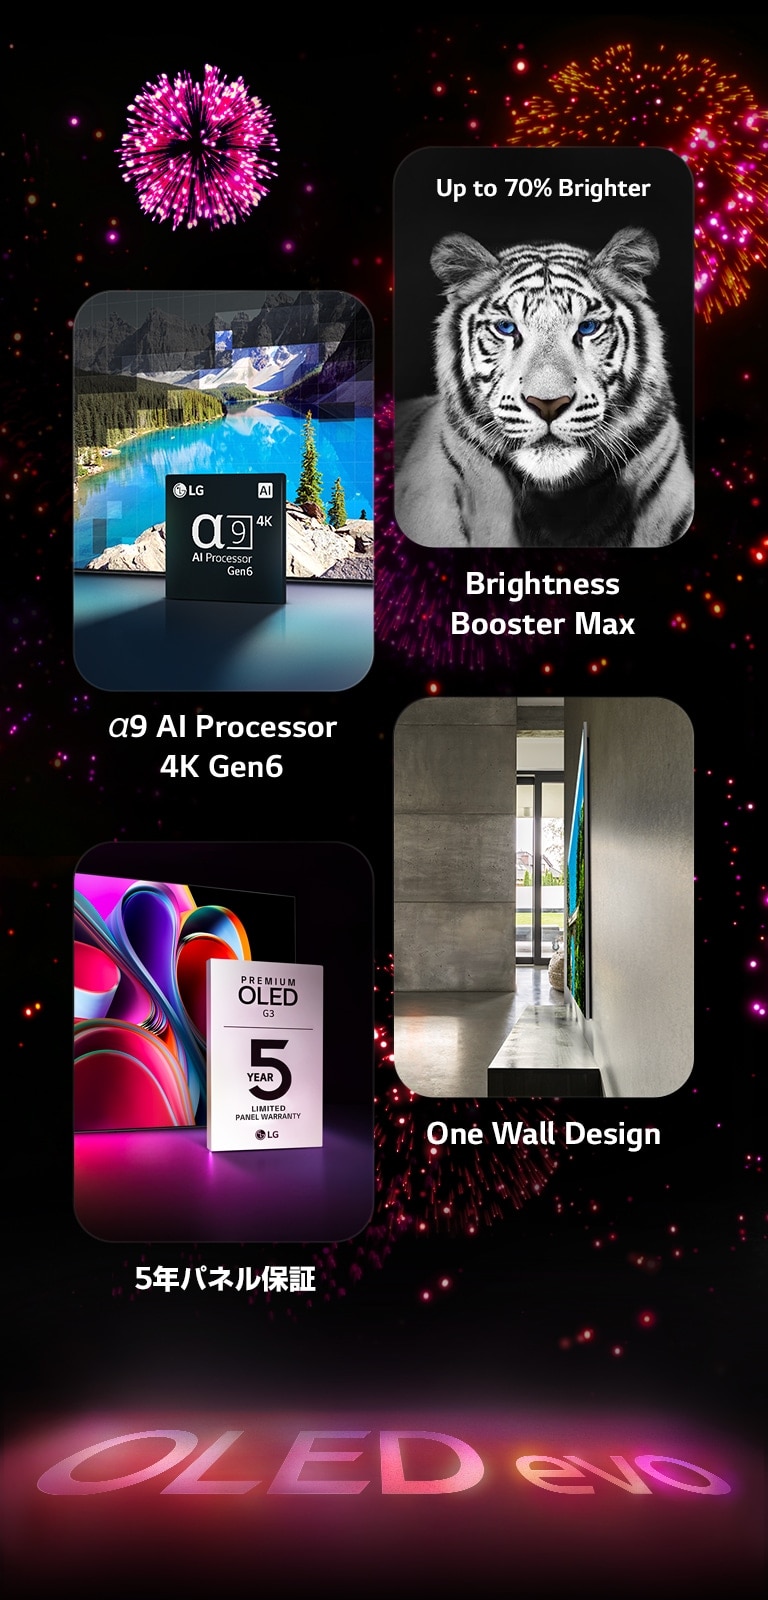 LG OLED evo G3 が、黒の背景にピンクとパープルの花火を映し出している。地の花火からピンクの反射で「OLED evo.」の文字が映し出されている。その中で、α9 AI Processor 4K Gen6 を描いた画像が、湖の写真の前で処理技術でリマスターされたチップが立っているところを示している。Brightness Booster Max を紹介する画像で、明るい白でコントラストの際立つトラが見える。5年パネル保証を表す画像で、ディスプレイを背景に、Premium OLED G3 保証ロゴが表示されている一つの壁のようなデザインを表す画像で、グレーのインダストリアルなリビングスペースで、LG OLED evo G3 が壁に溶け込んでいる様子を映し出している。